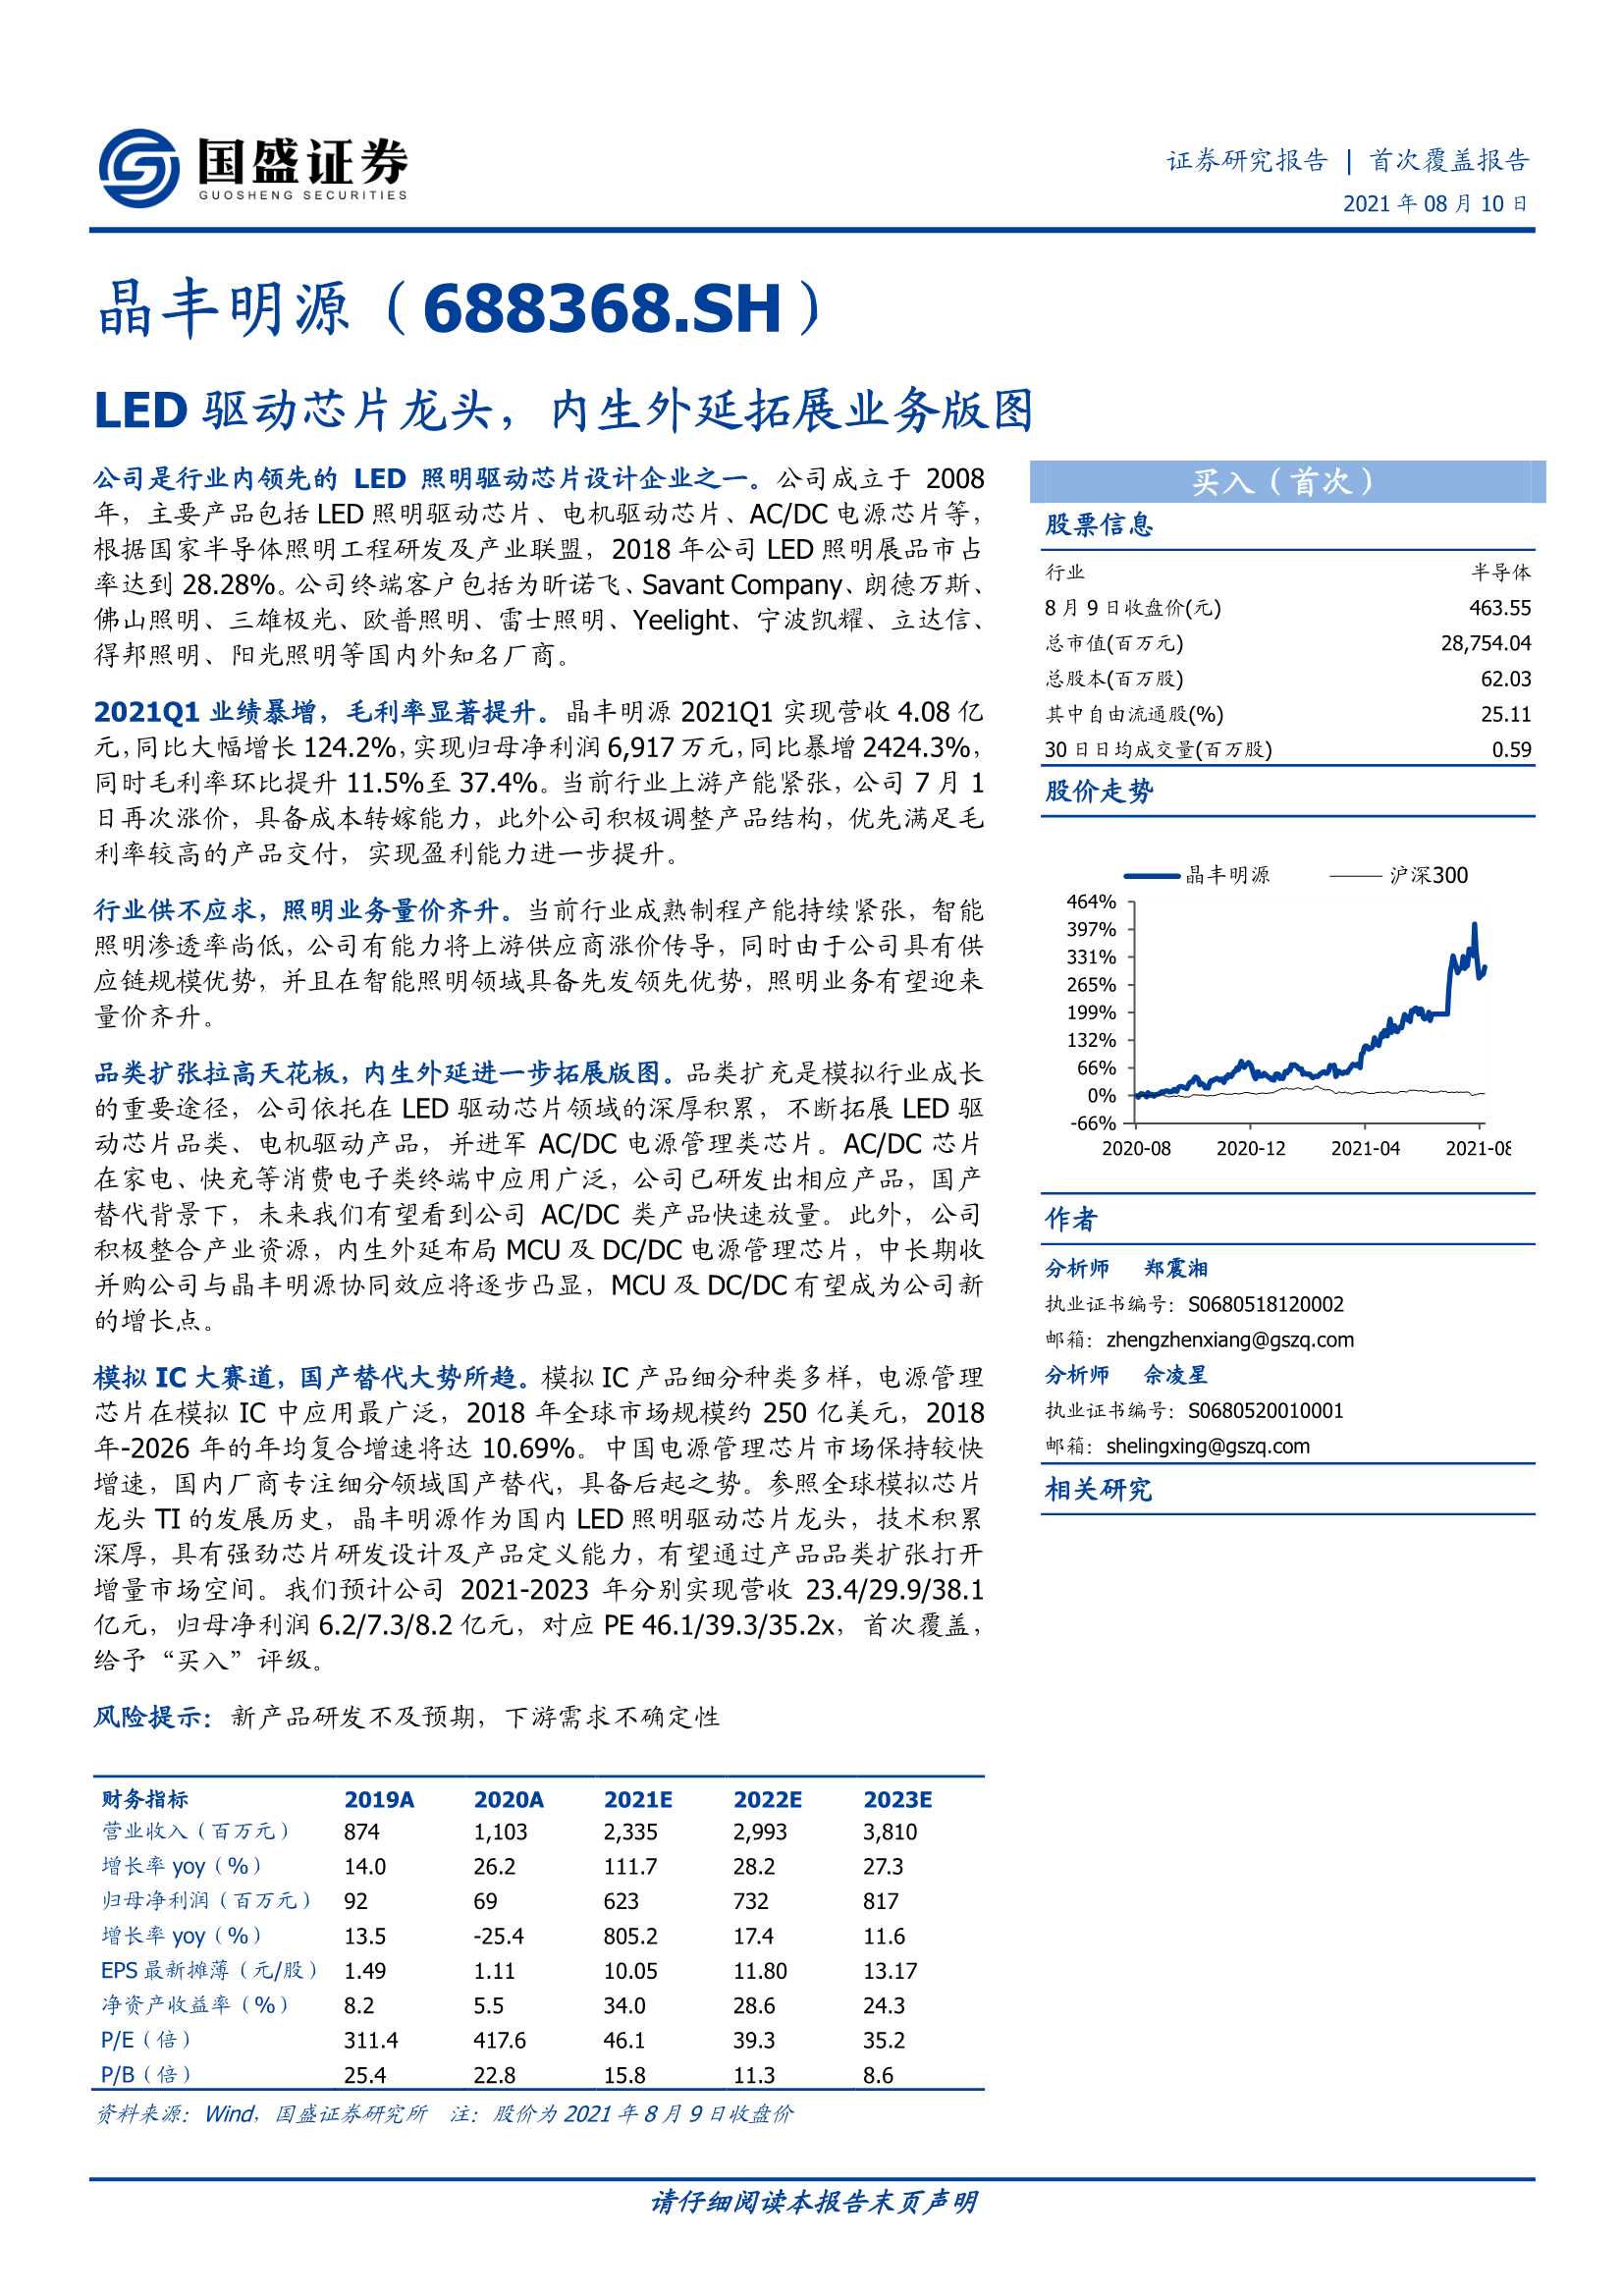 国盛证券-晶丰明源-688368-LED驱动芯片龙头，内生外延拓展业务版图-20210810-43页